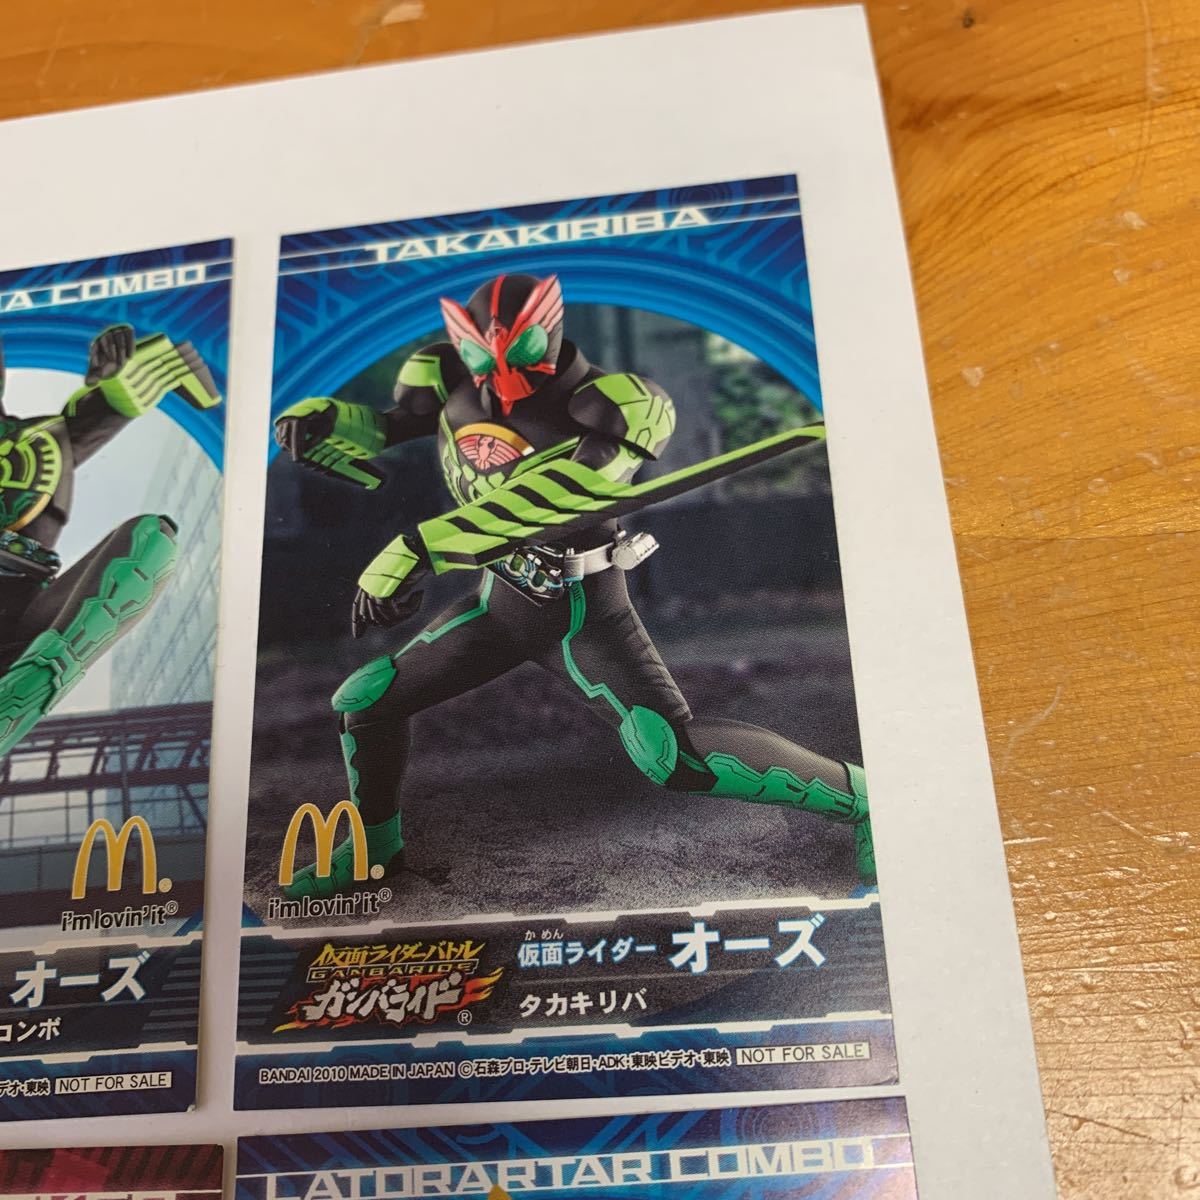  Kamen Rider Kamen Rider Battle Ganbaride наклейка 10 листов 2010 McDonald's happy комплект BANDAI редкость редкий не продается не использовался бесплатная доставка 